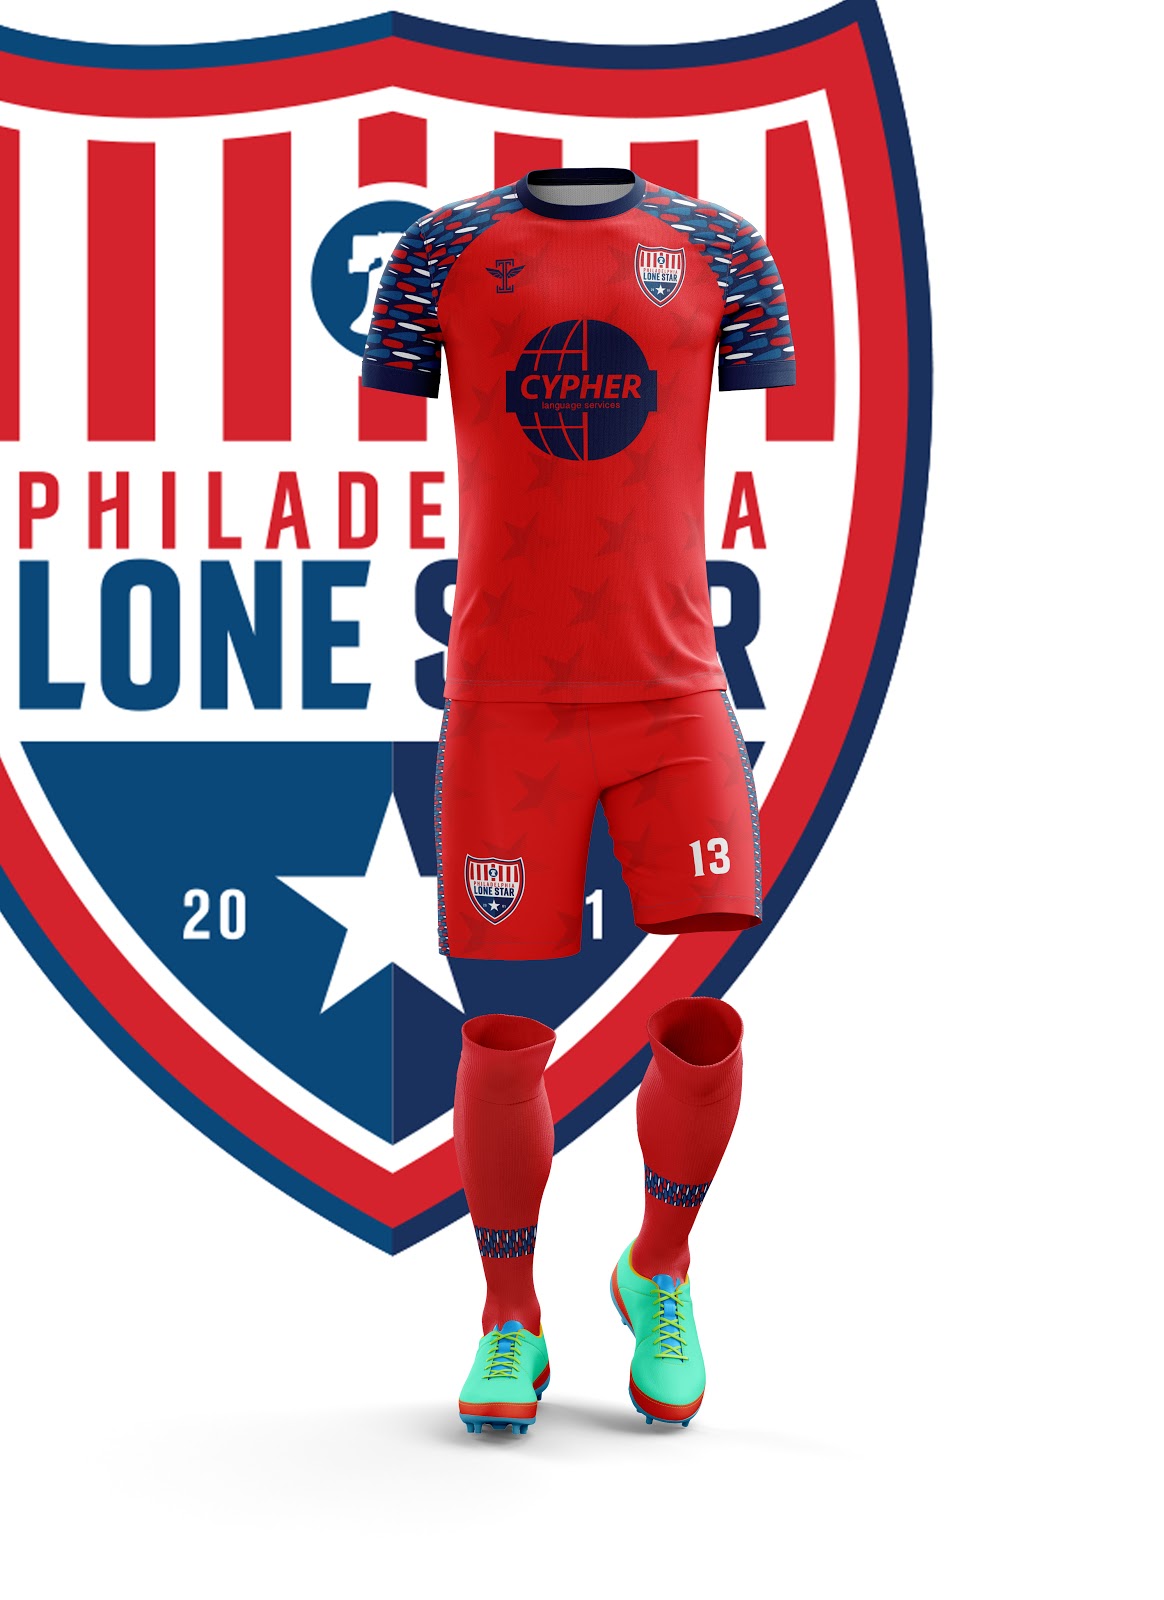 Philadelphia Lone Star African Red Star Kit 2.jpg